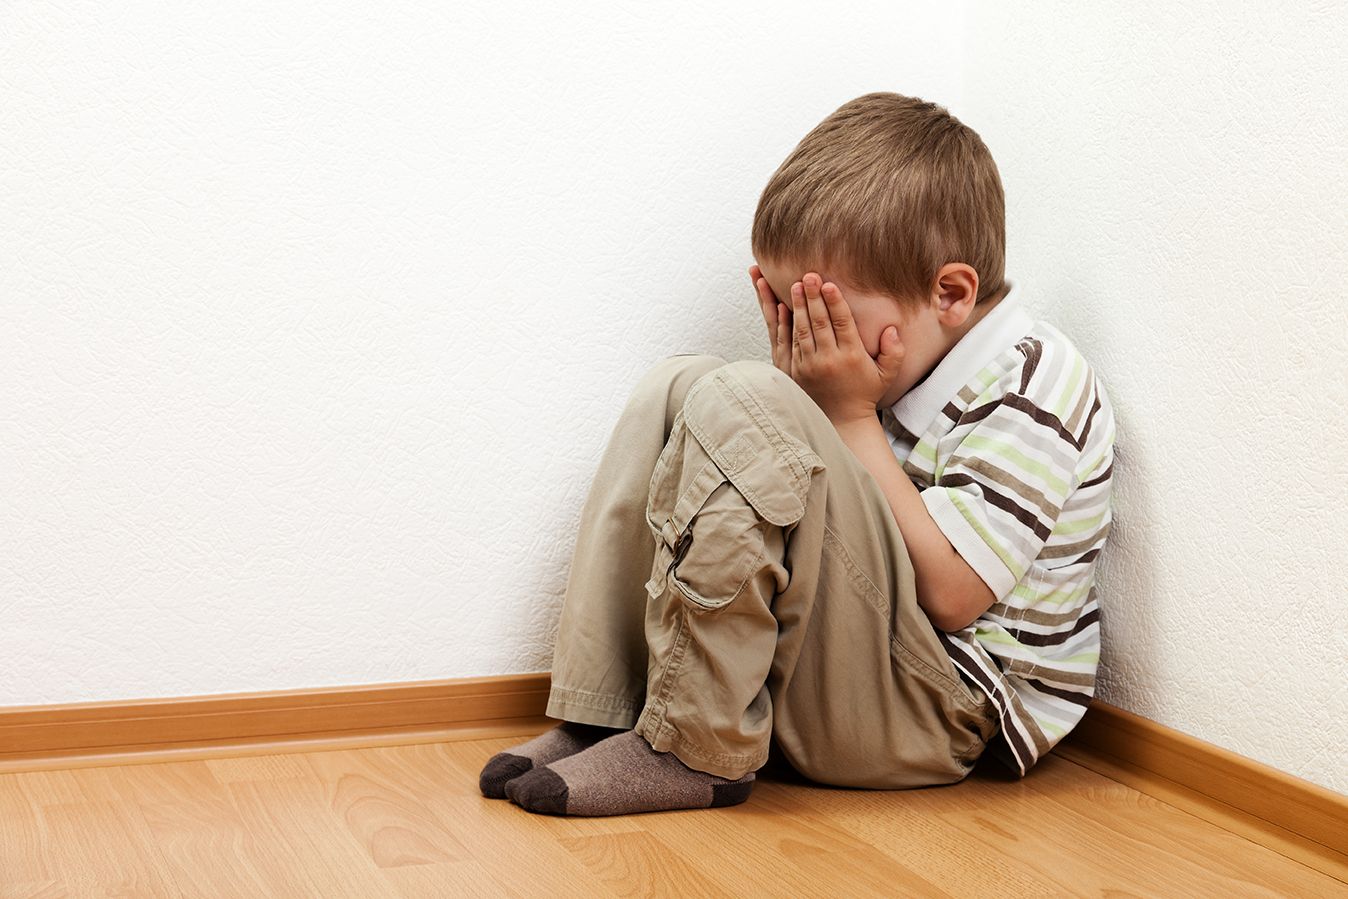   Trẻ có thể cảm thấy tội lỗi khi cha mẹ không hạnh phúc, hay cãi nhau  